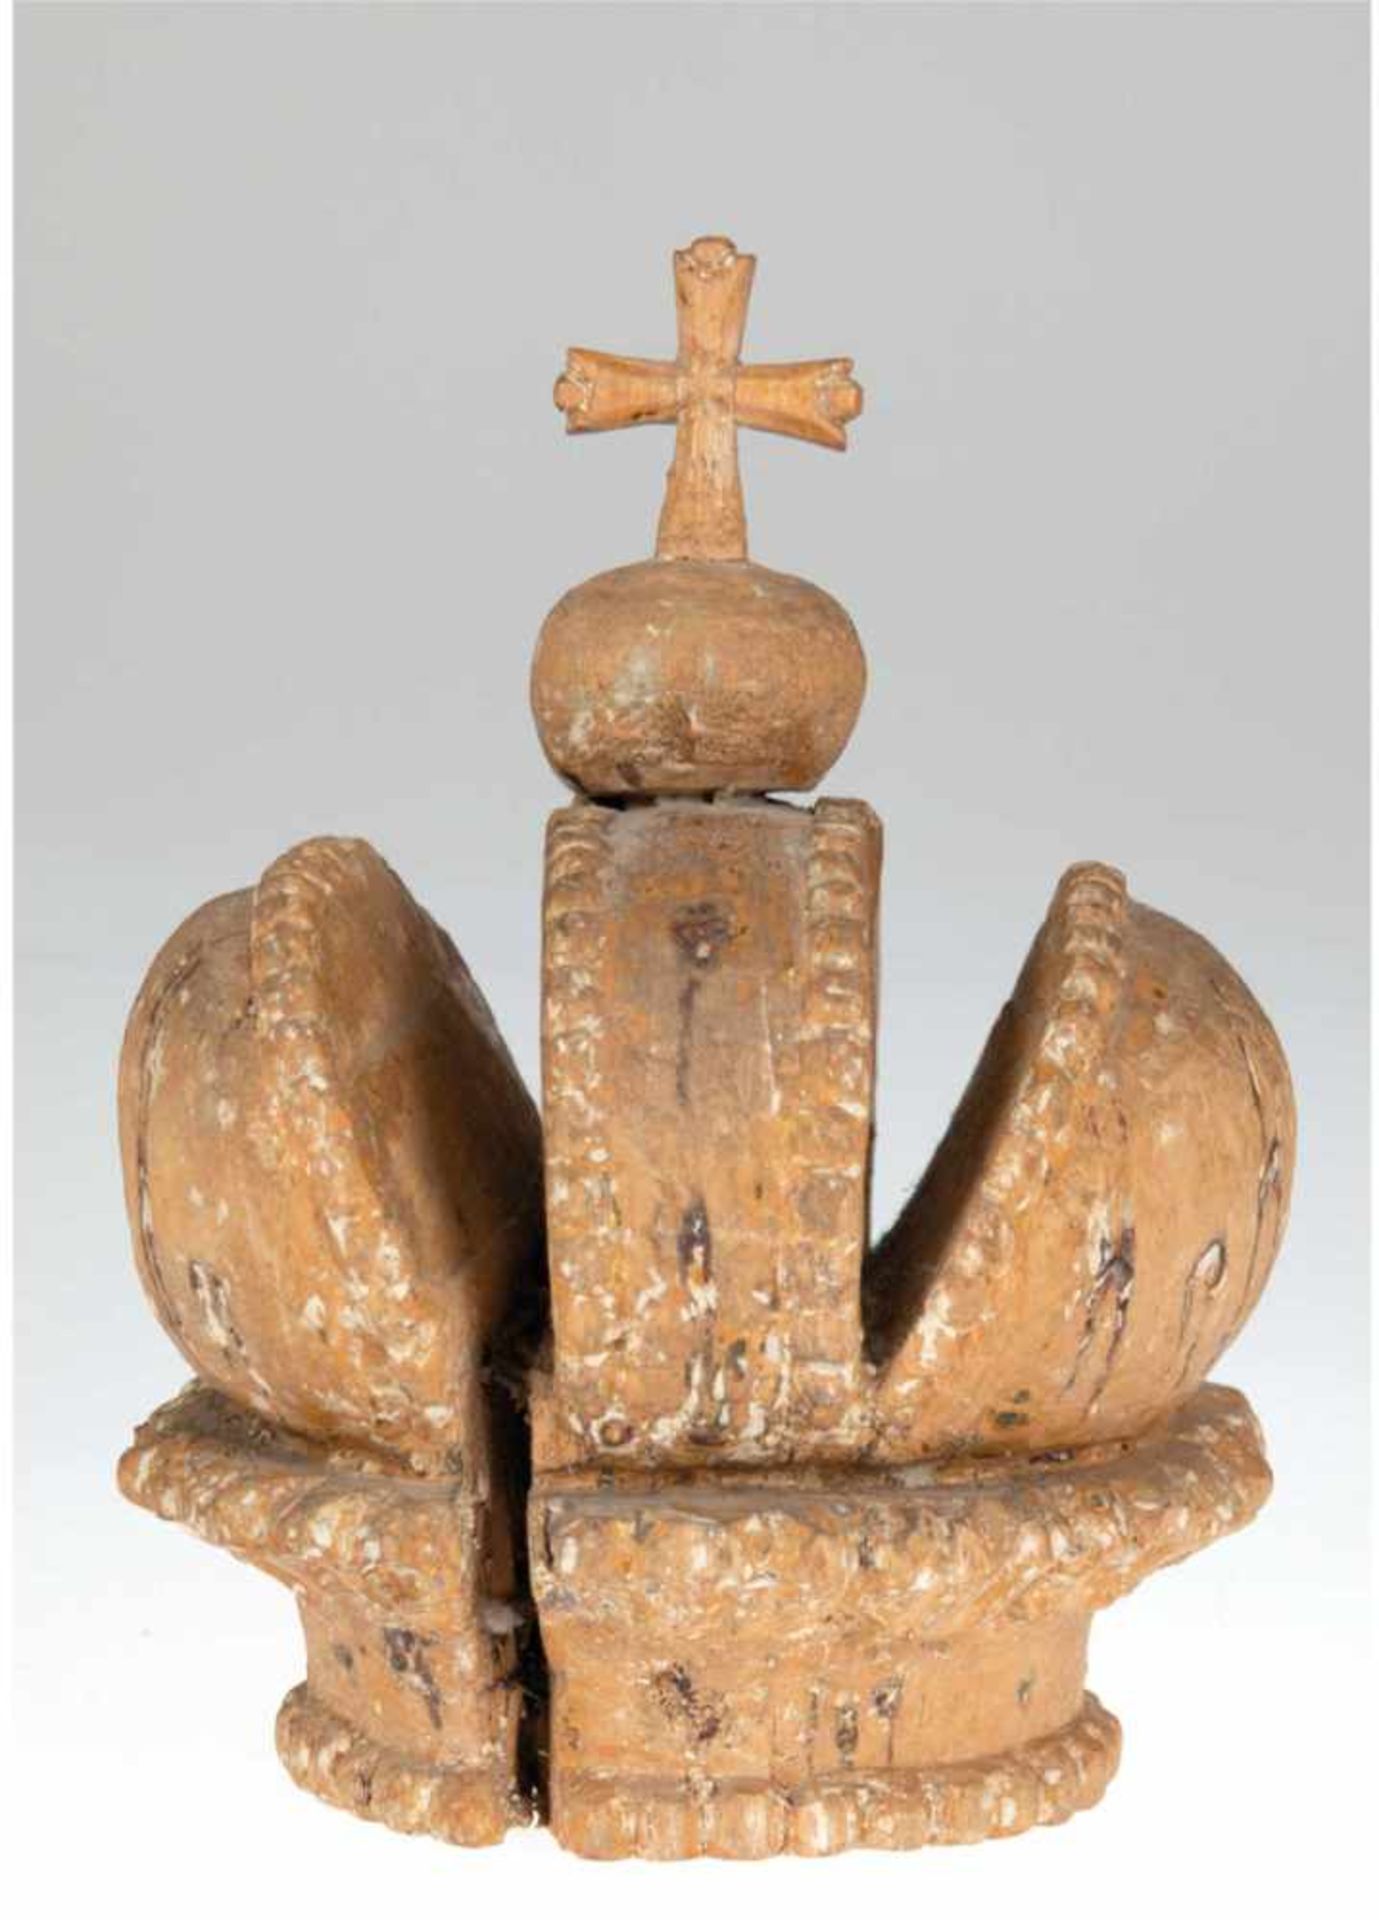 Marienkrone 19. Jh., Holz, wohl Süddeutschland, geschnitzt, in der Art einer geschlossenenKrone, mit